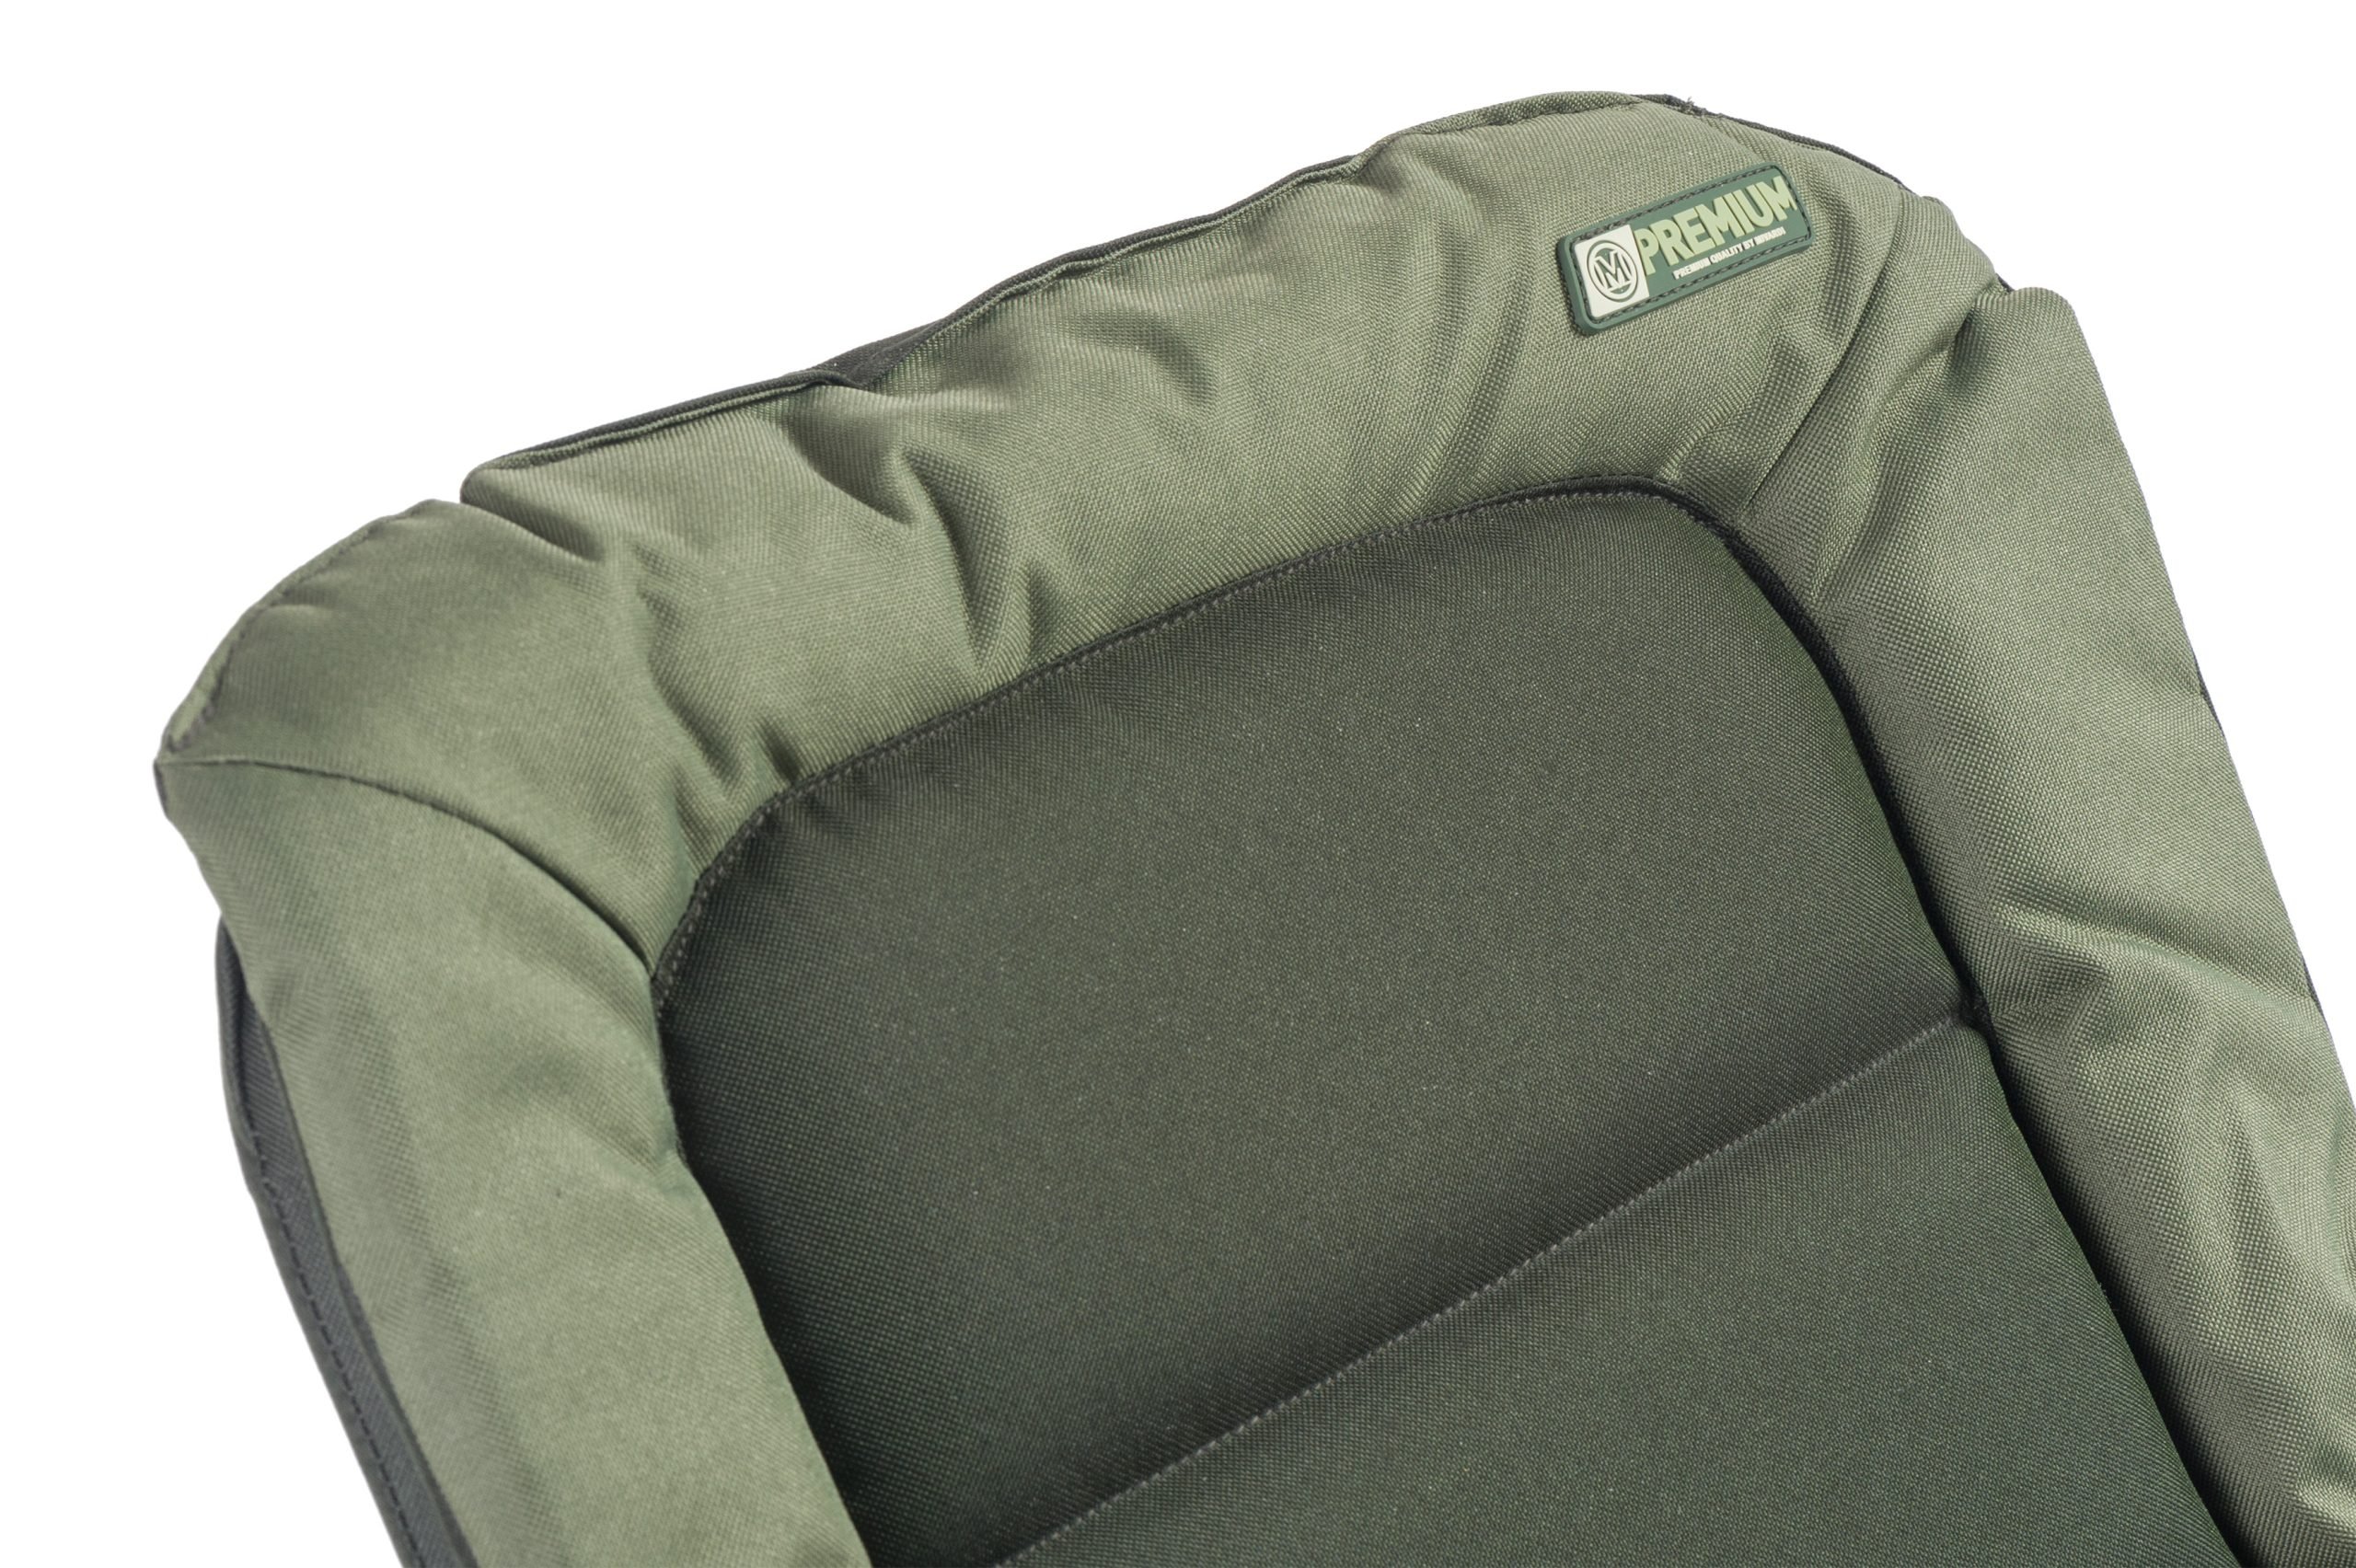 Miardi-Chair-Premium-CarpStore.pl-Miedzynarodowy-Sklep-dla-Karpiarzy-4